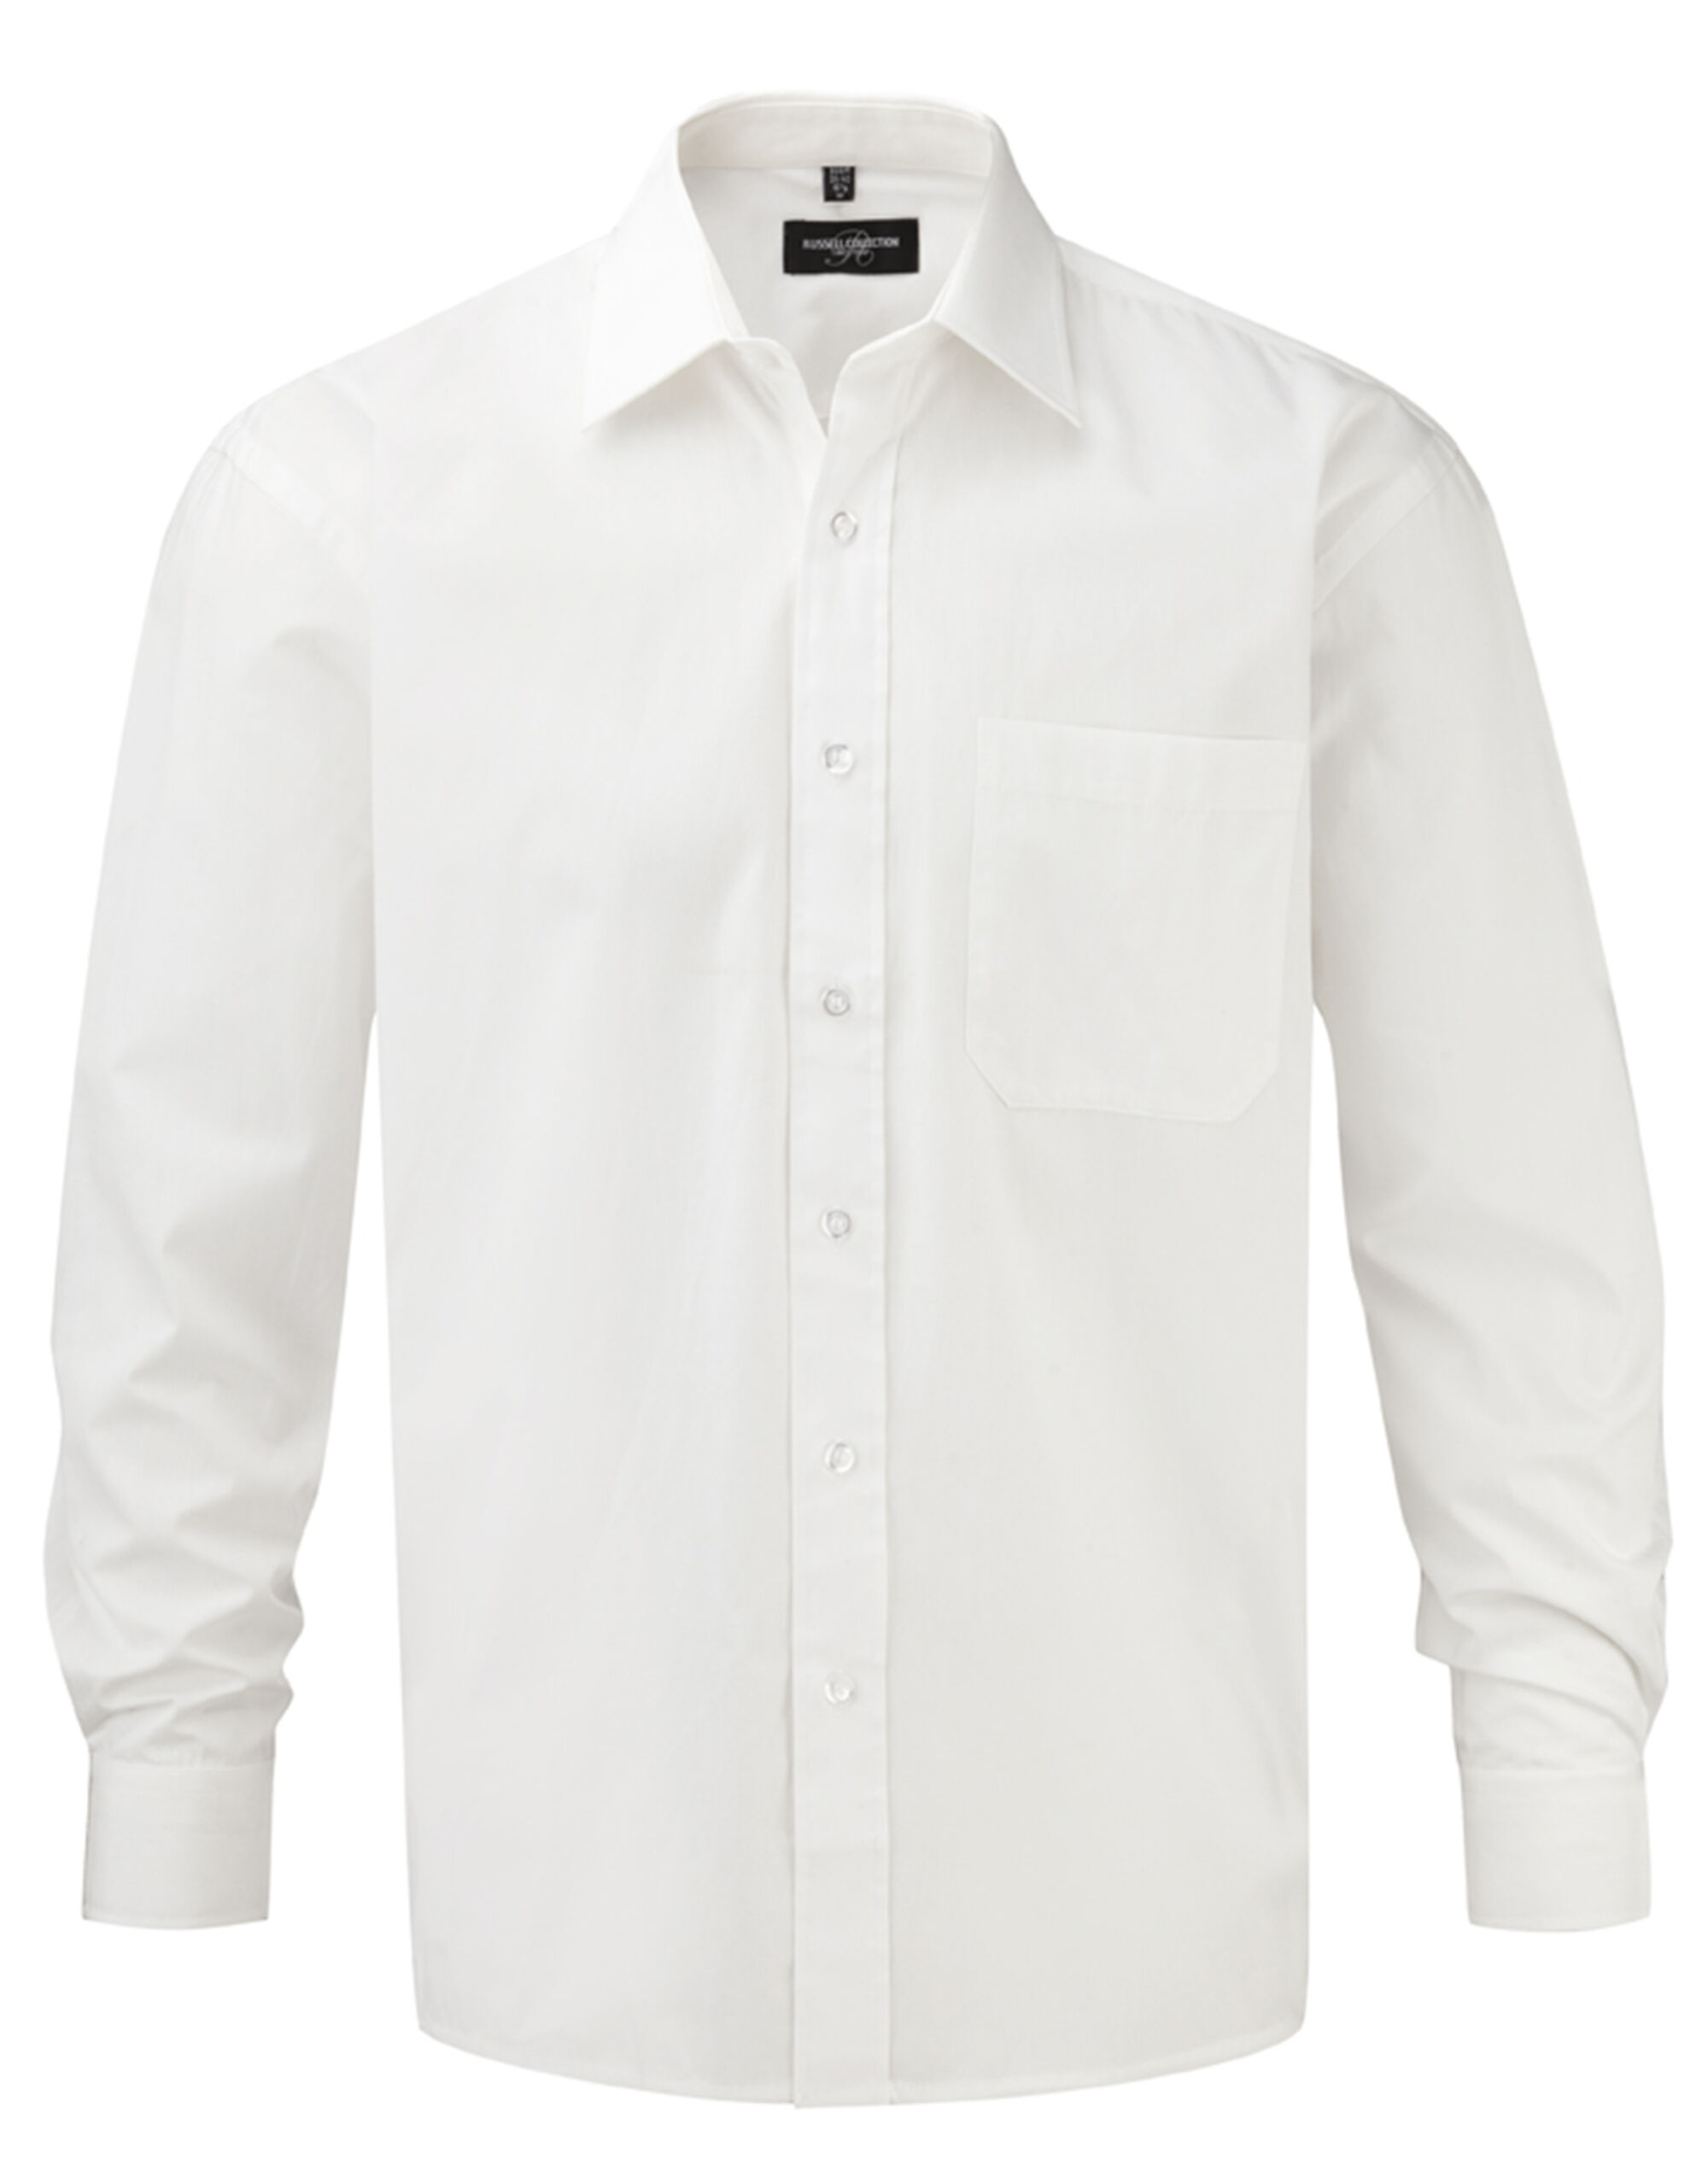 L/S Pure Cotton Shirt